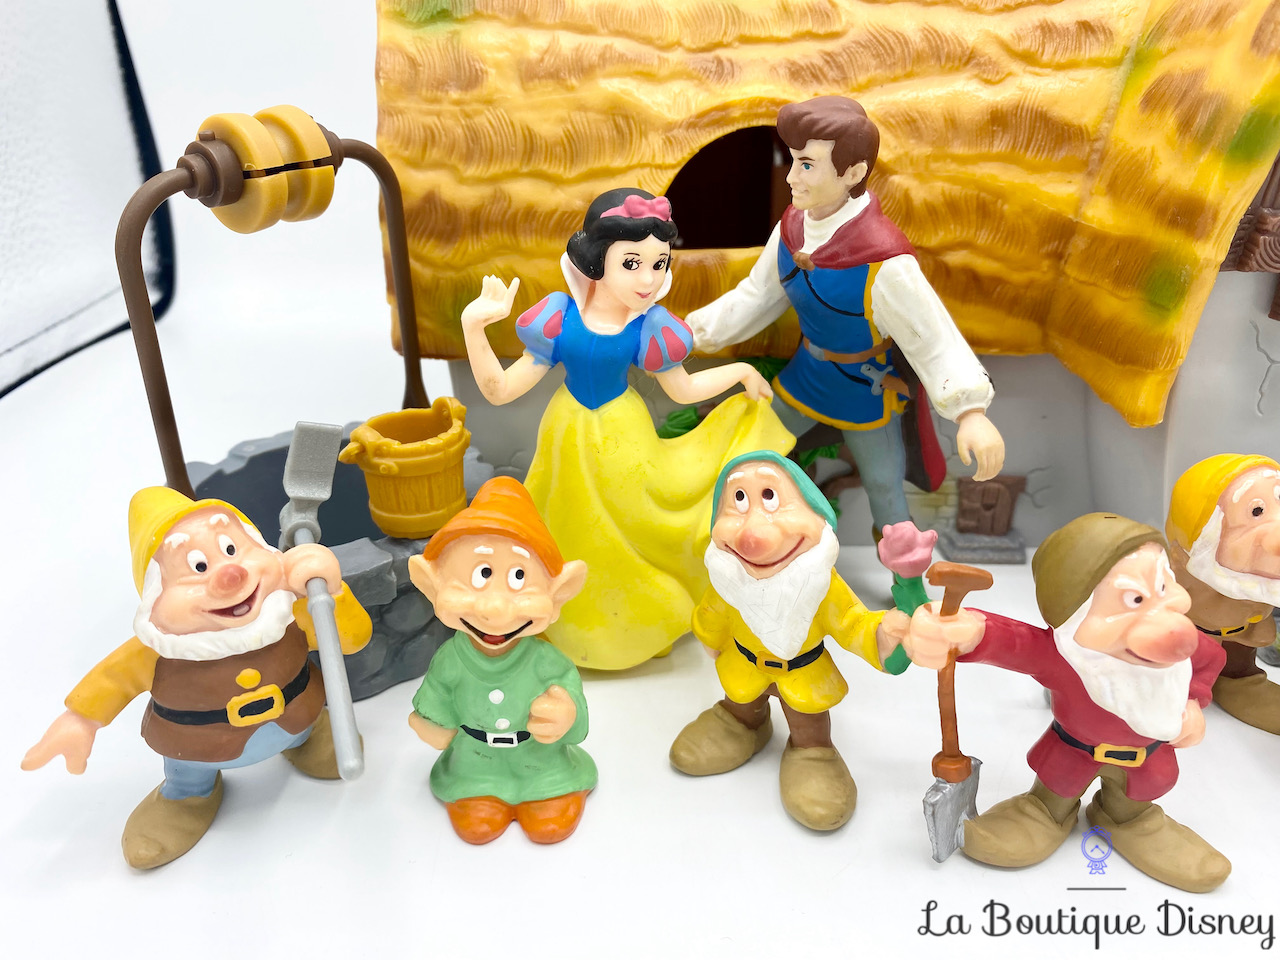 Lot figurines Princesse Disney Bully - jouets rétro jeux de